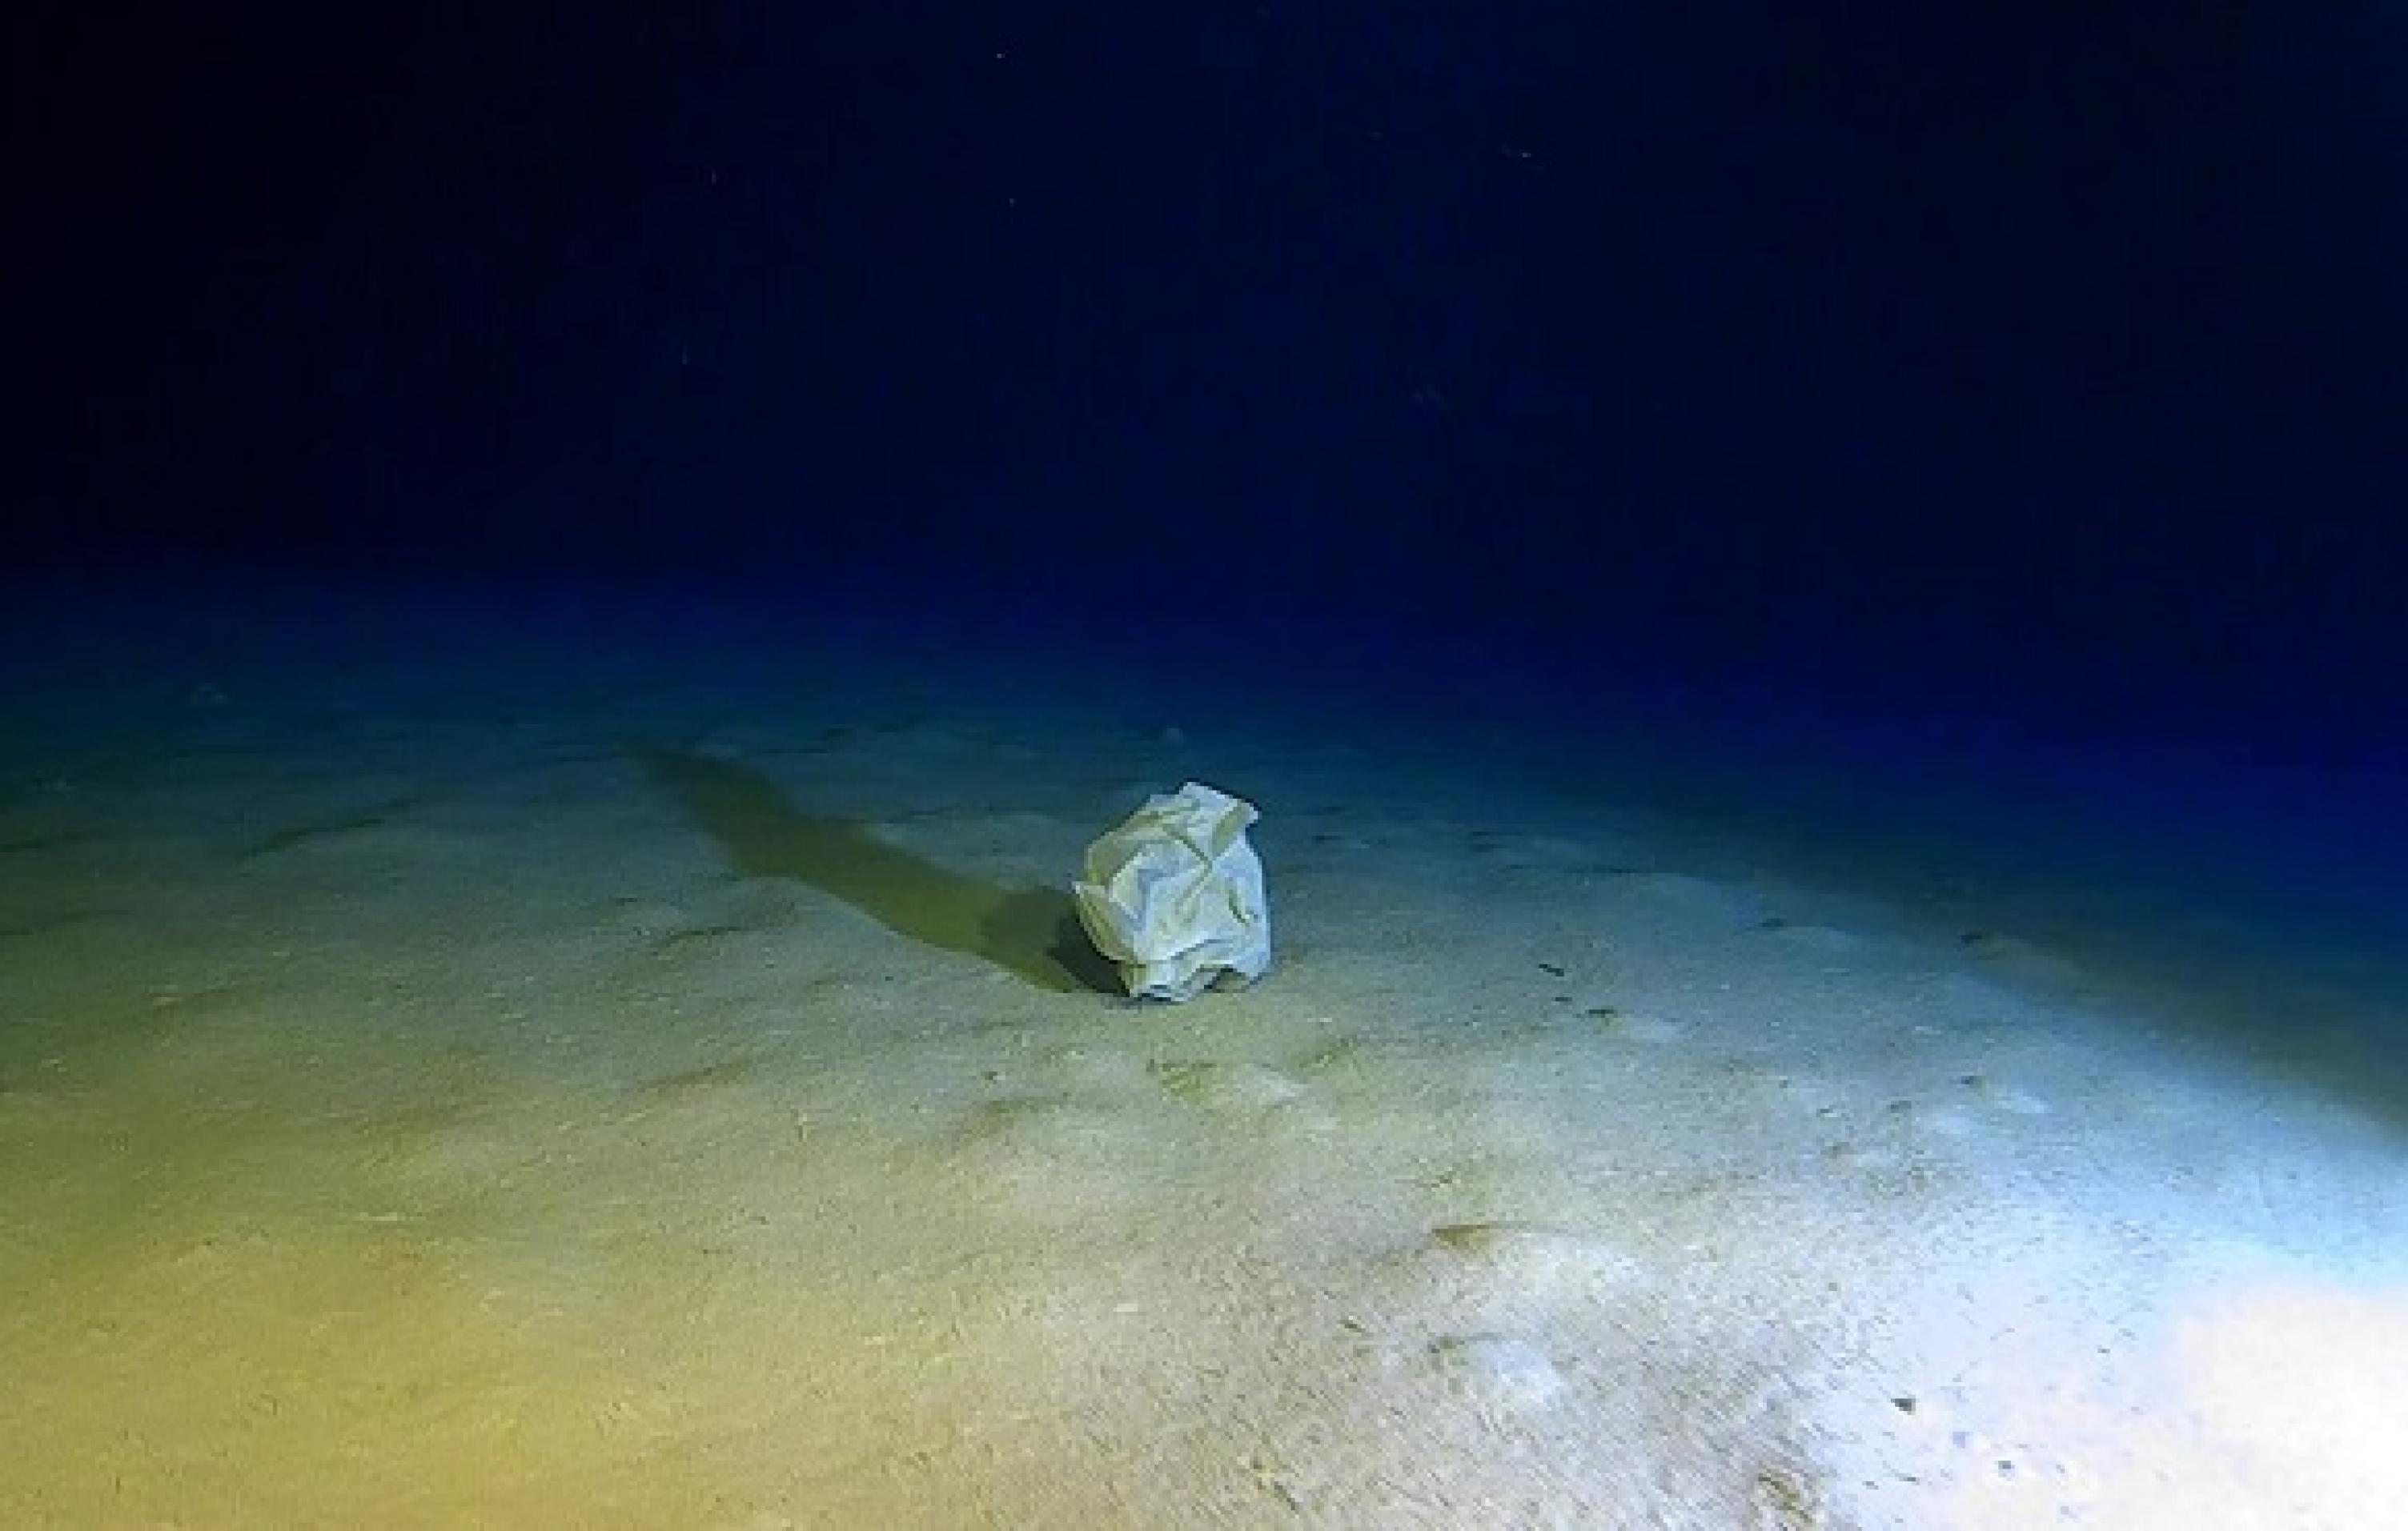 Foto eines kargen Meeresbodens im Dämmerlicht. Mittig ist eine zusammengeknüllte Plastiktüte zu sehen.